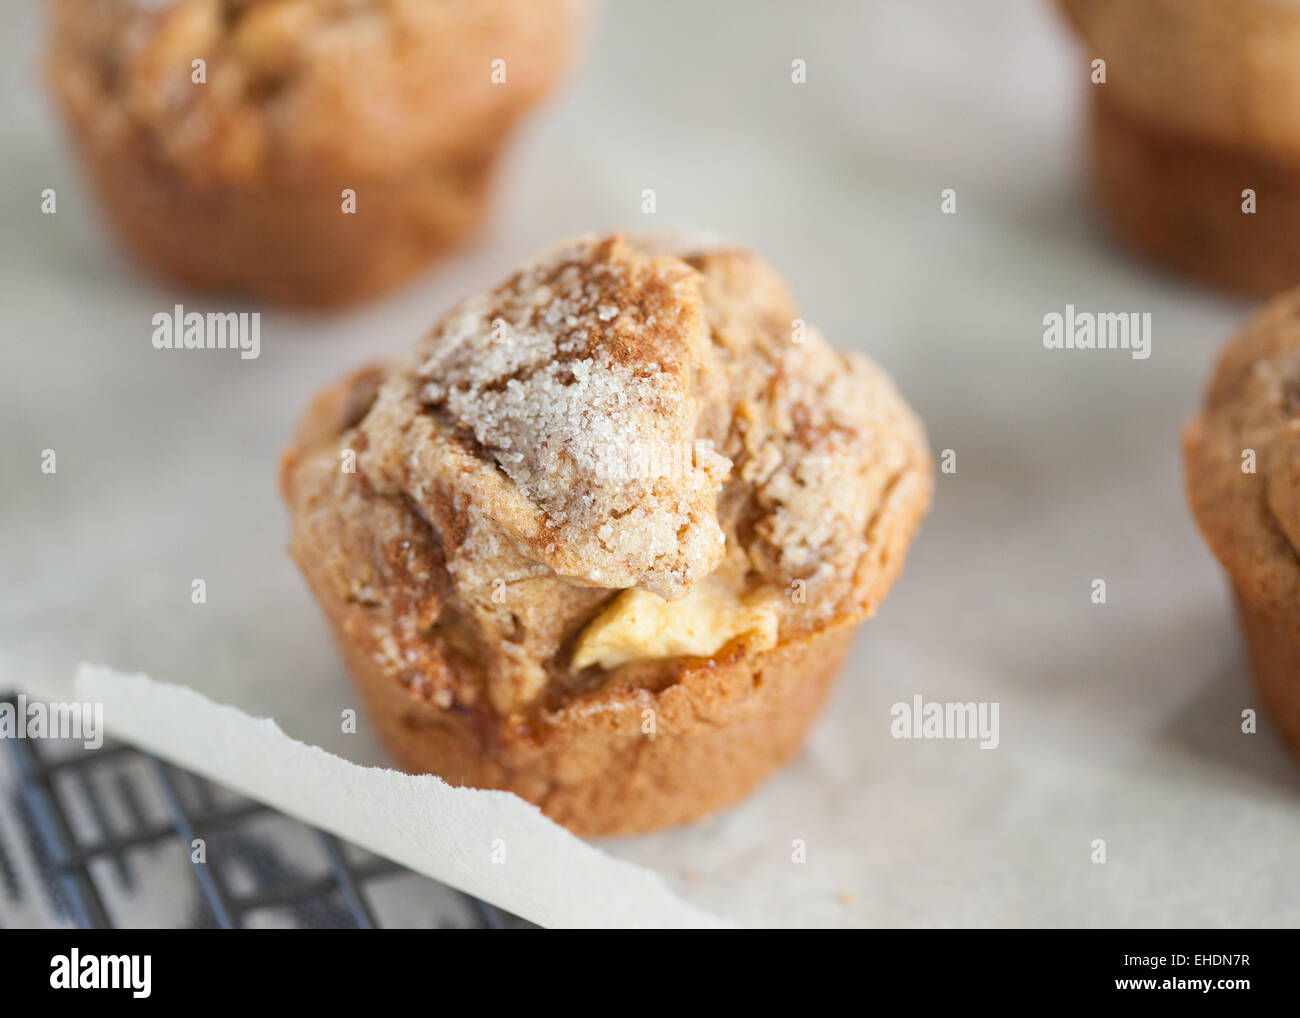 Gluten free apple cinnamon muffin Stock Photo